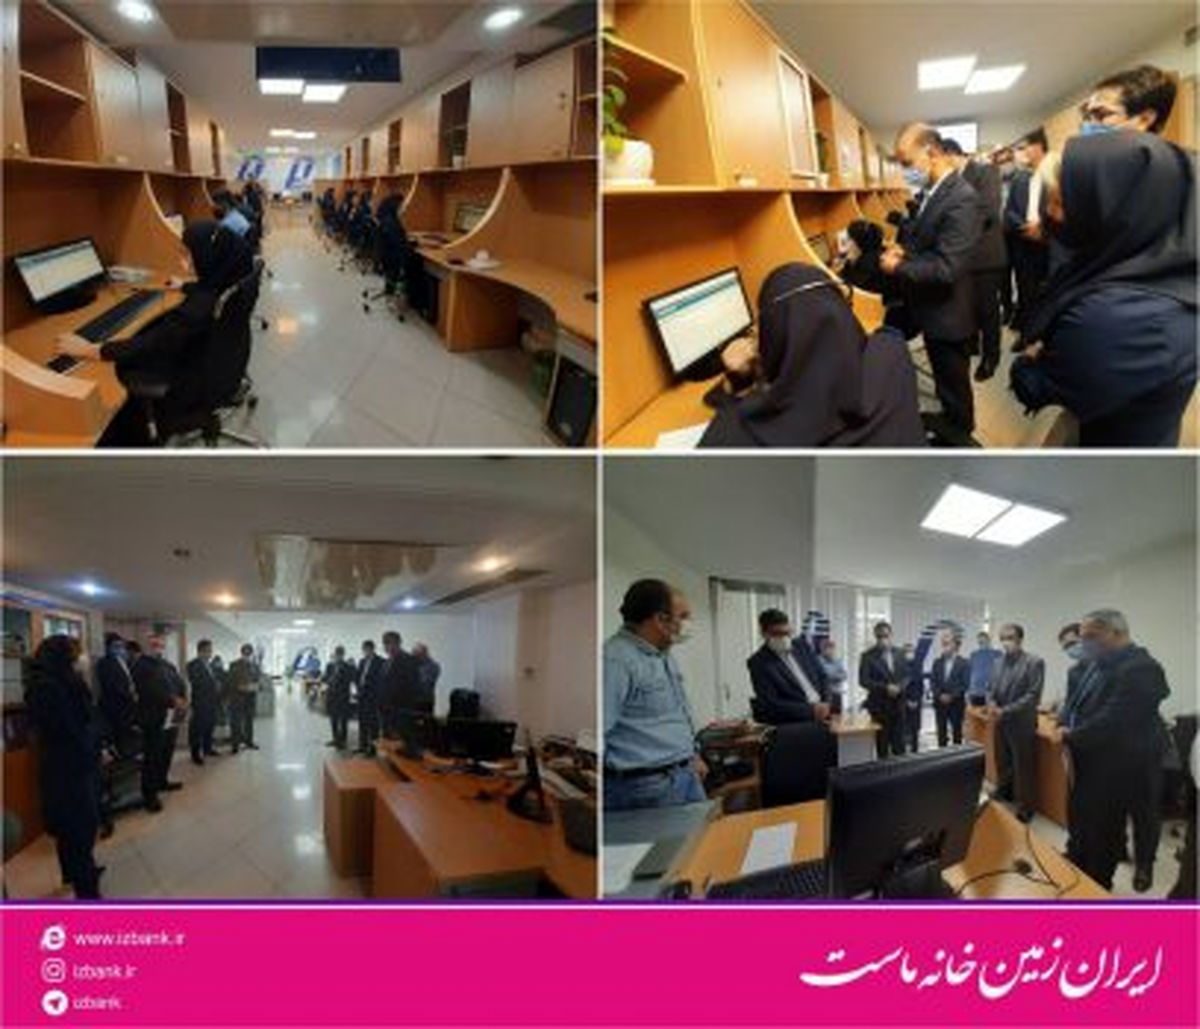  ارائه خدمات نوین در مرکز ارتباط بانک ایران زمینن